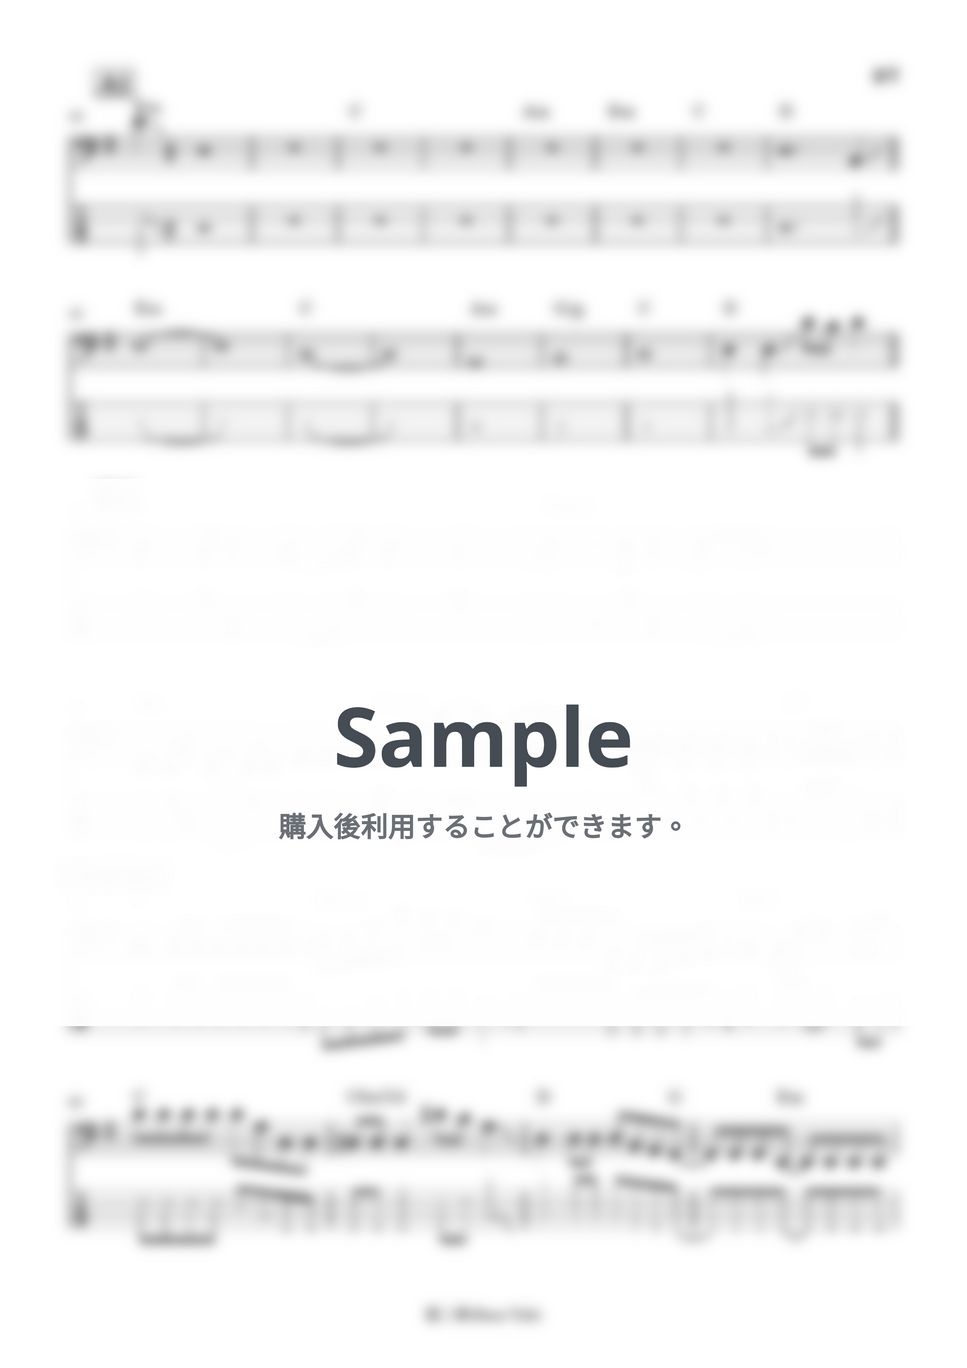 ヨルシカ - 藍二乗 (ベース譜) by Kodai Hojo